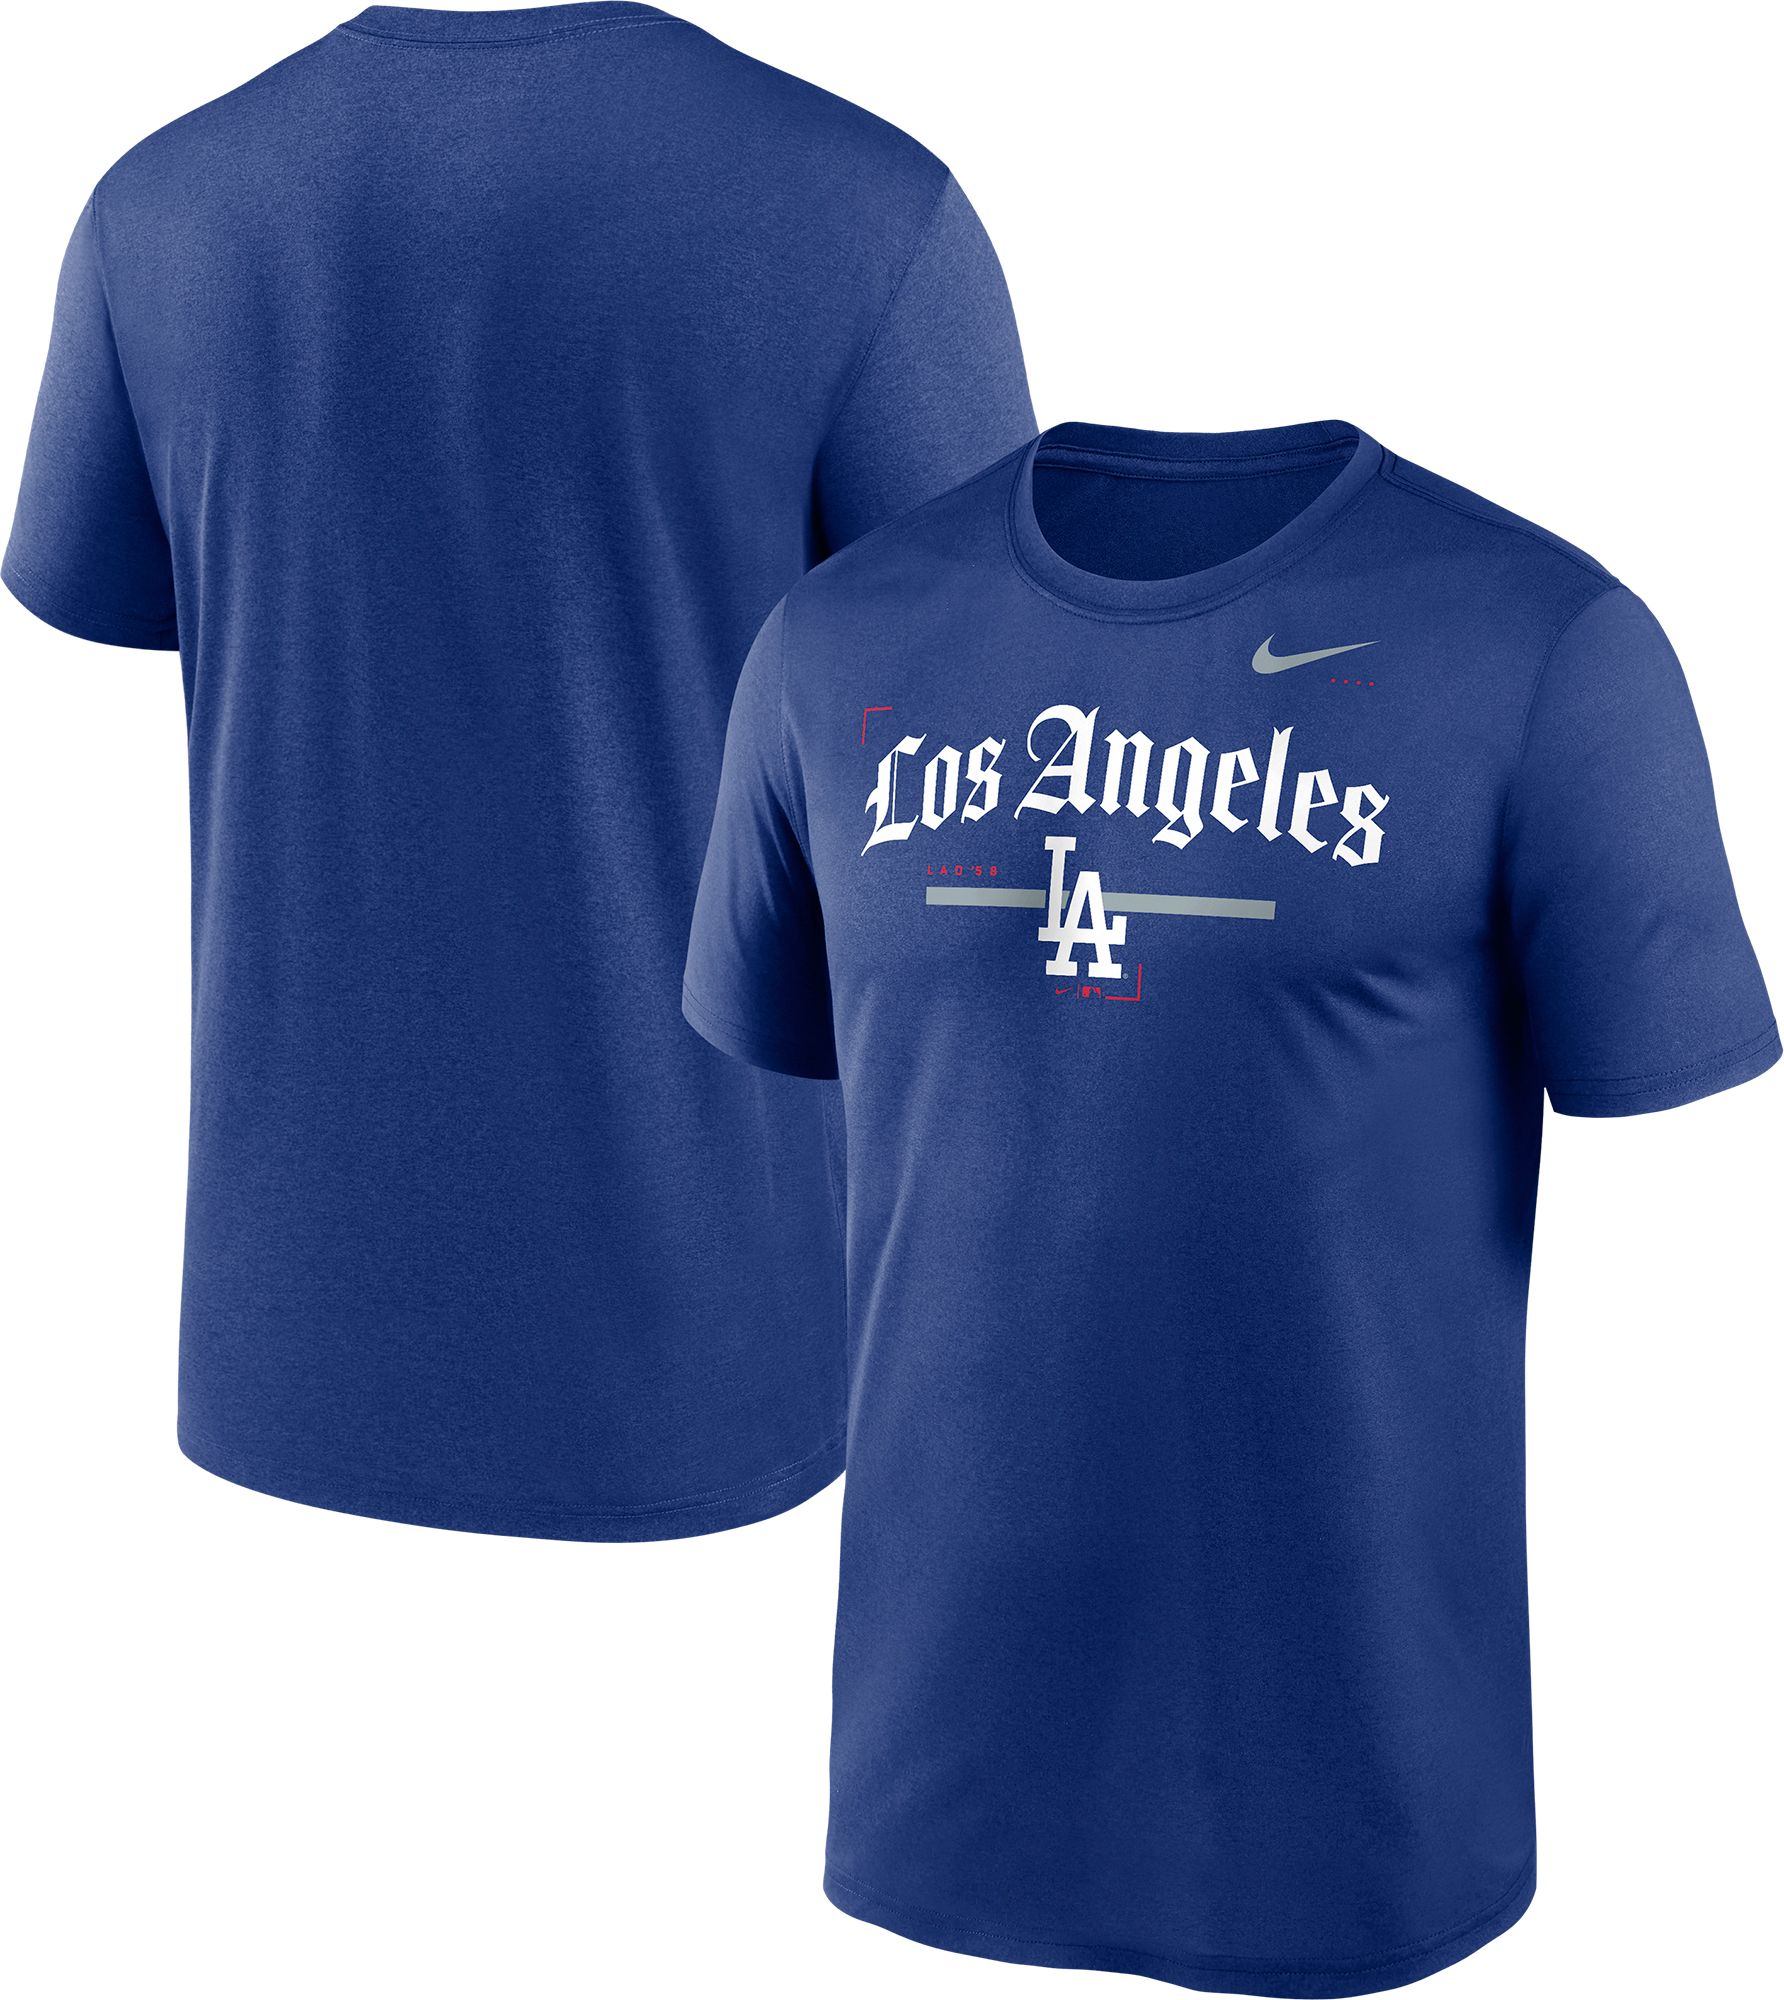 Los Angeles Dodgers Will Smith Gray Replica Youth Road Player Jersey  S,M,L,XL,XXL,XXXL,XXXXL